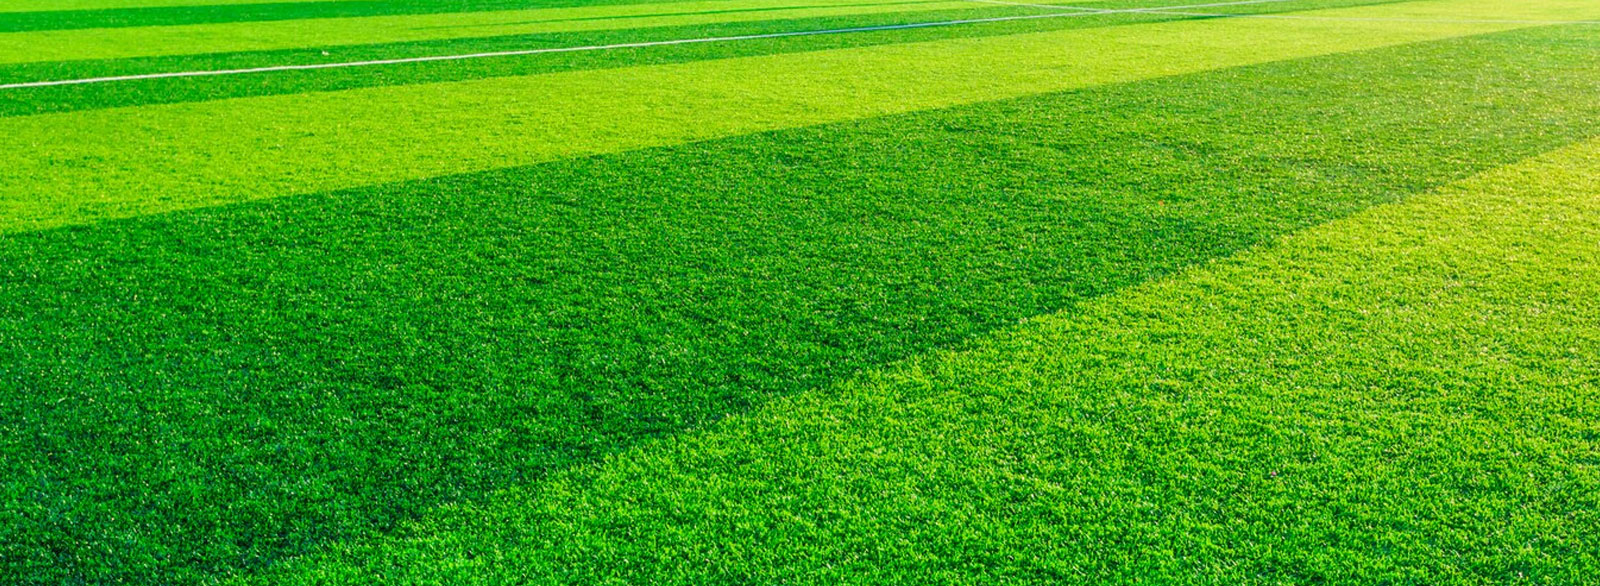 Штучний газон для футболу - який краще вибрати?